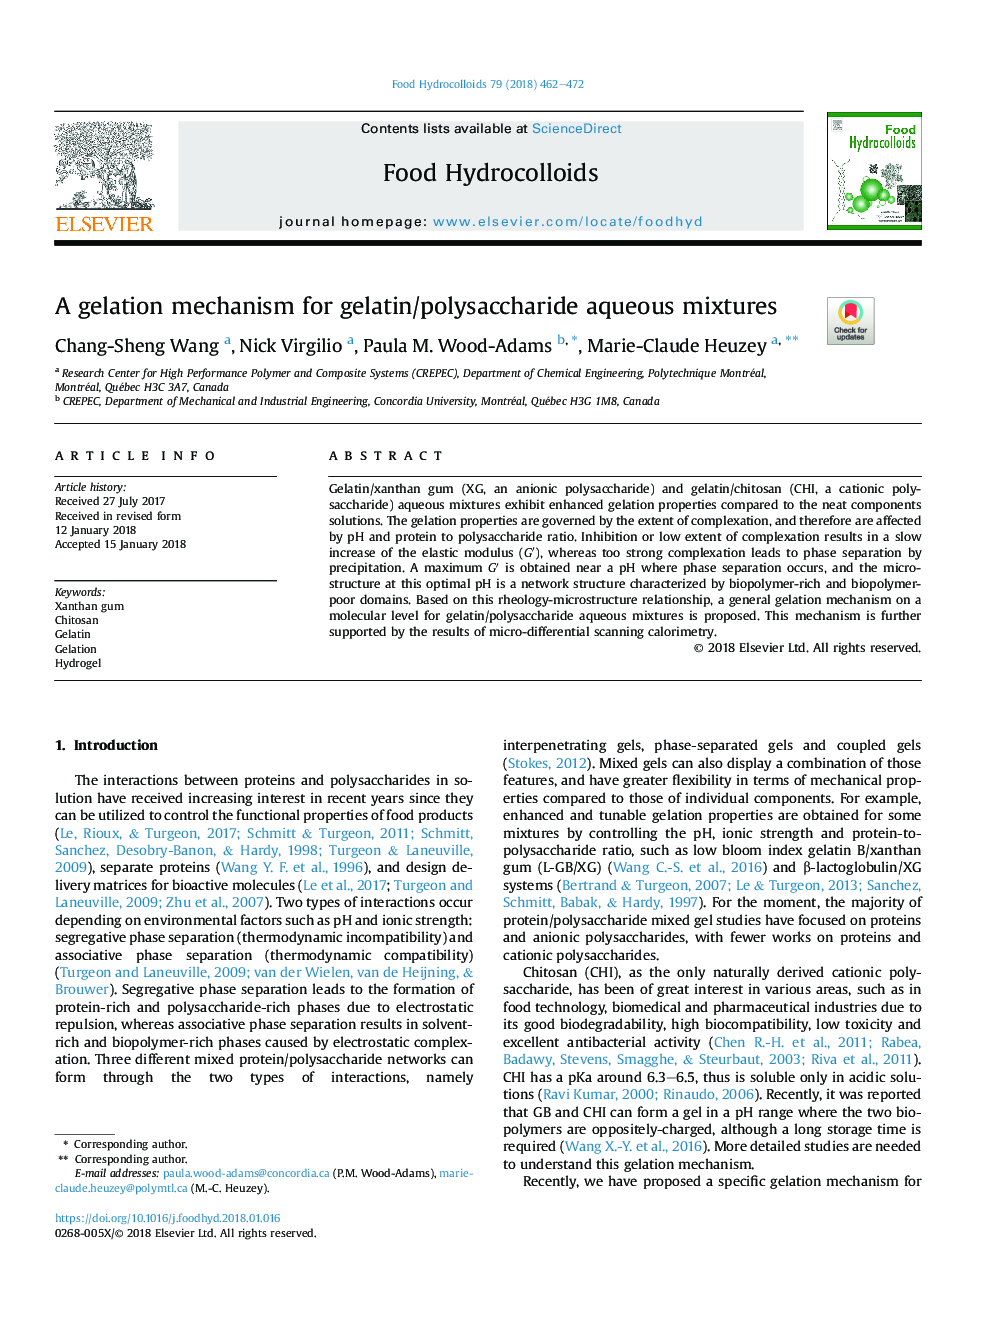 مکانیسم ژله ای برای مخلوط های آب آبی ژلاتین / پلی ساکارید 